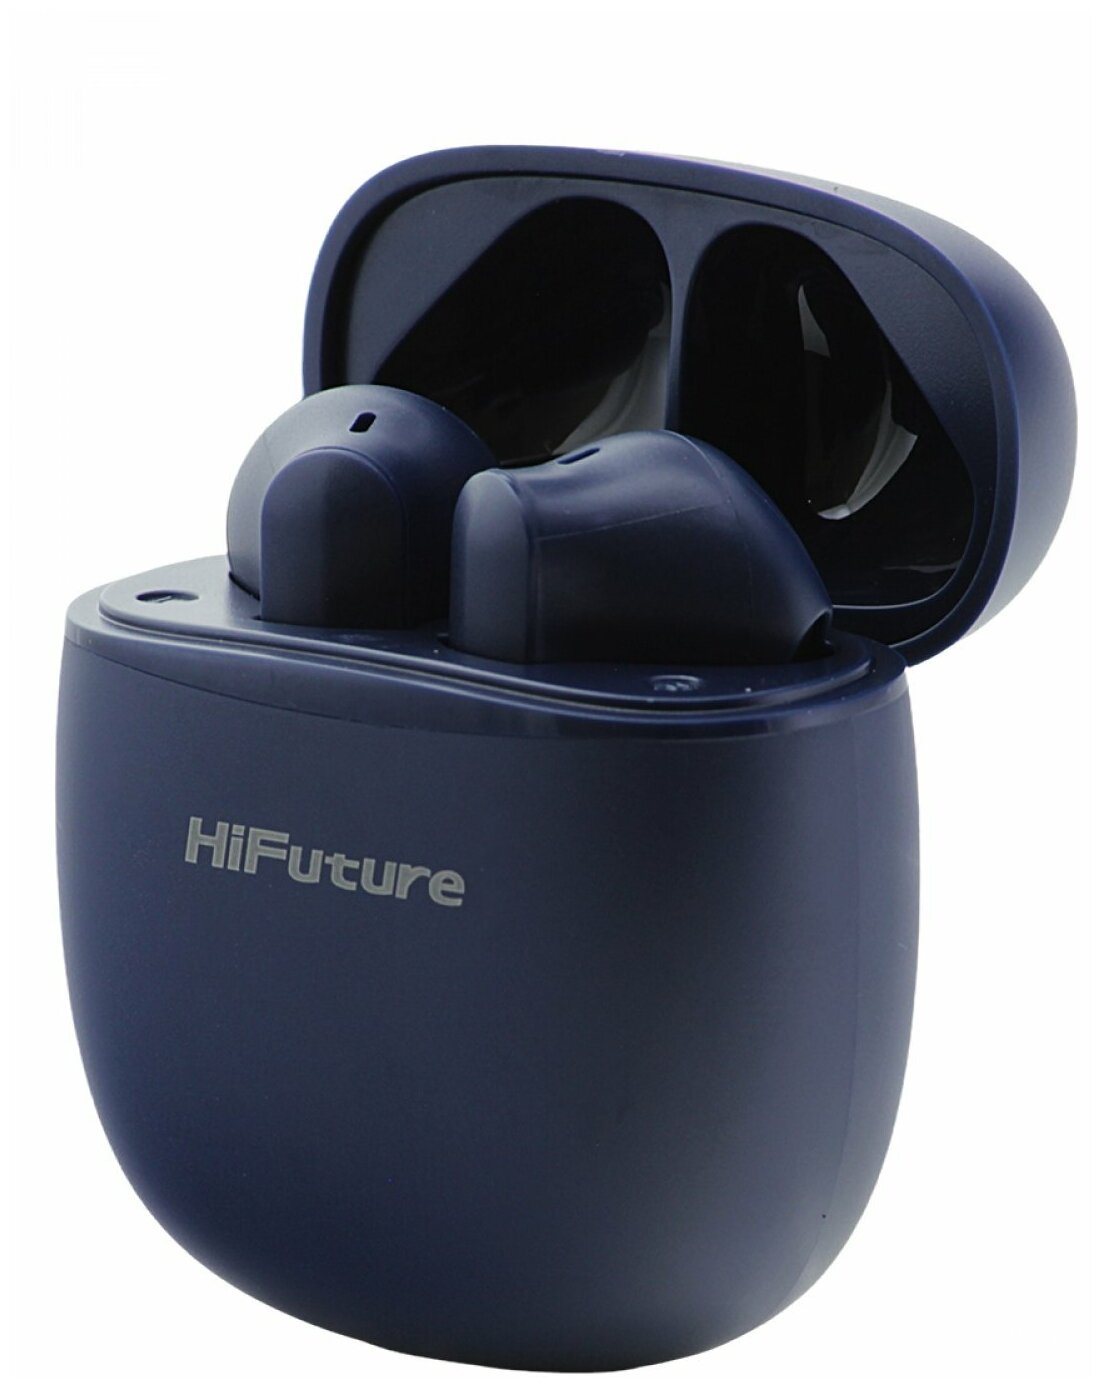 Беспроводные bluetooth наушники HiFuture TWS ColorBuds Navy Blue, блютуз гарнитура с микрофоном,наушники для iPhone/Android с зарядным футляром/кейсом